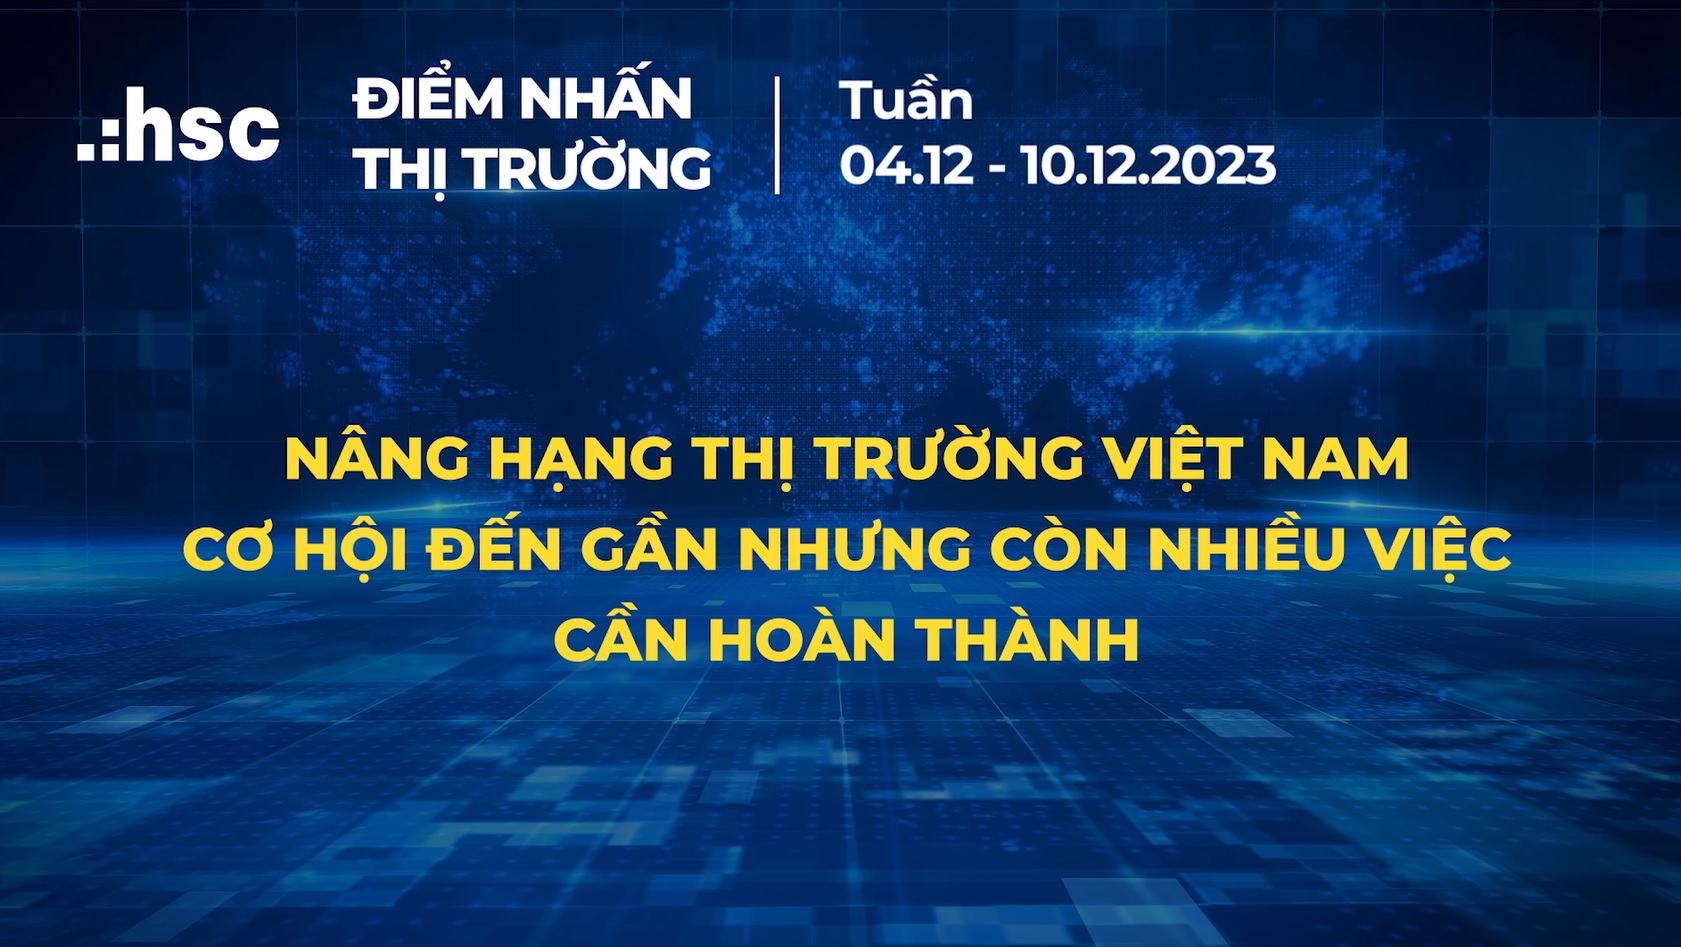 Nâng hạng thị trường Việt Nam: Cơ hội đến gần nhưng còn nhiều việc cần hoàn thành